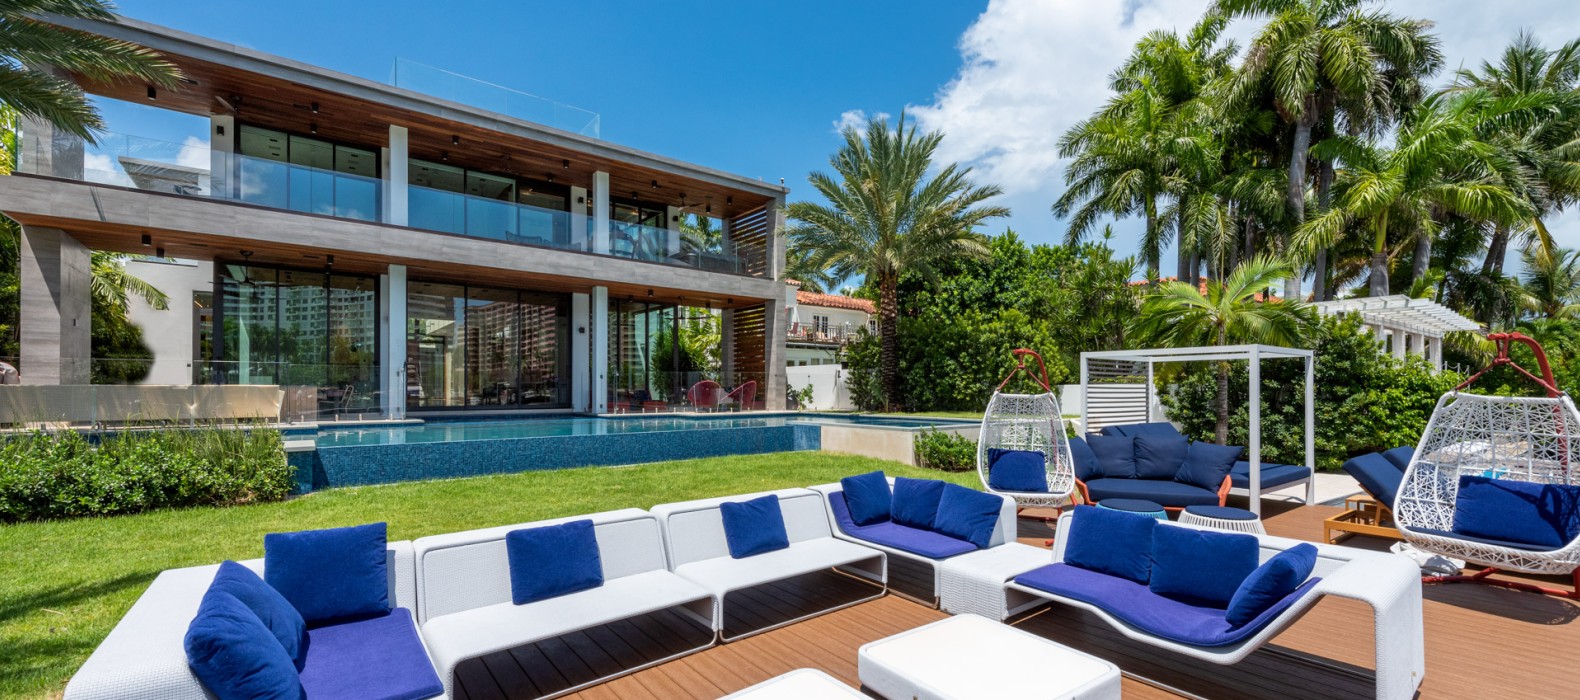 Exterior chill area of Villa Pamela in Miami